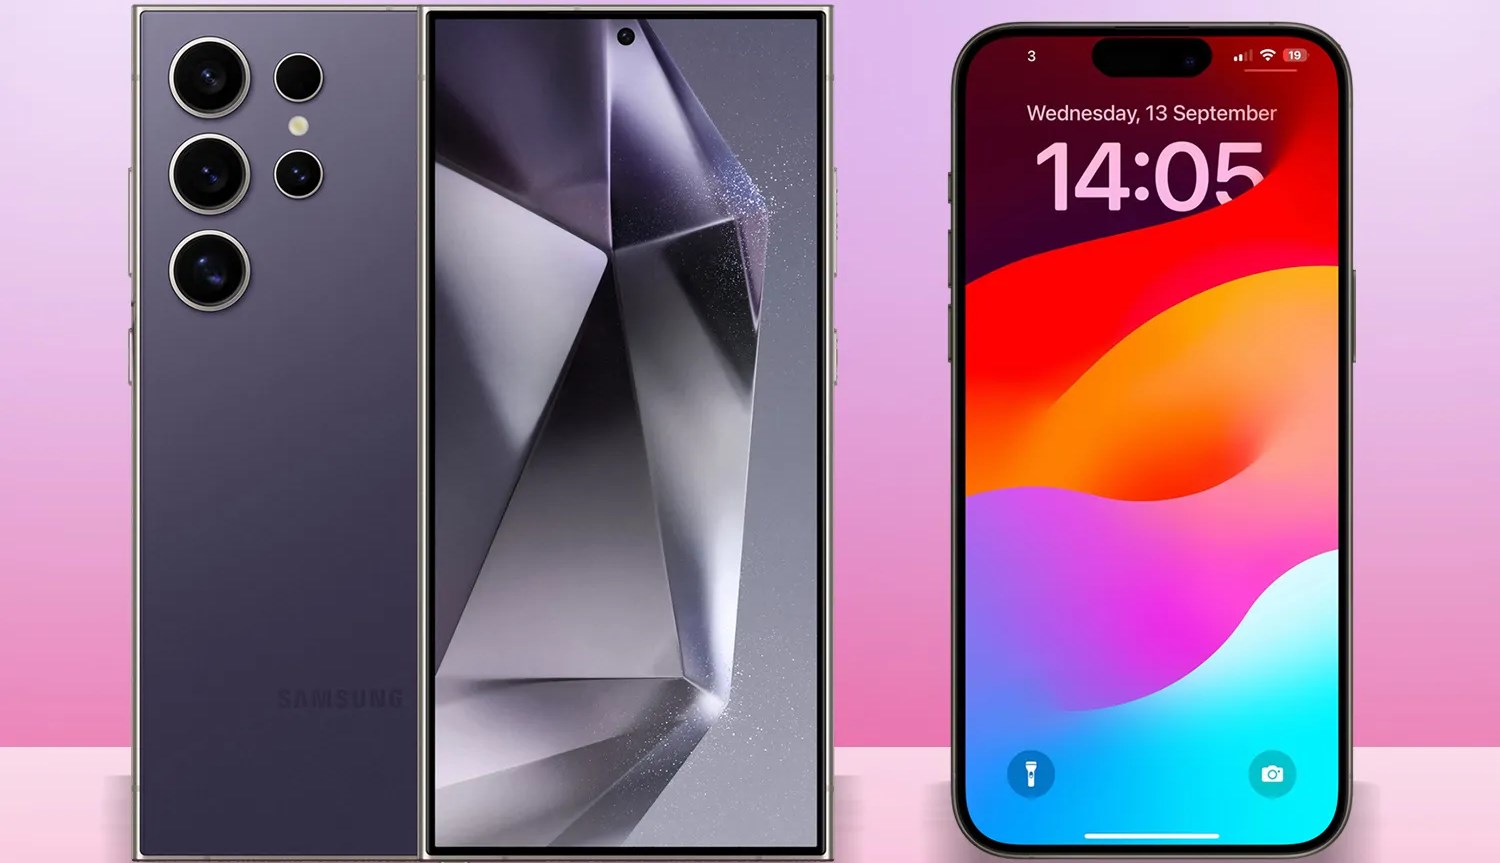 Samsung Galaxy S24 Ultra vs iPhone 15 Pro Max karşılaştırması